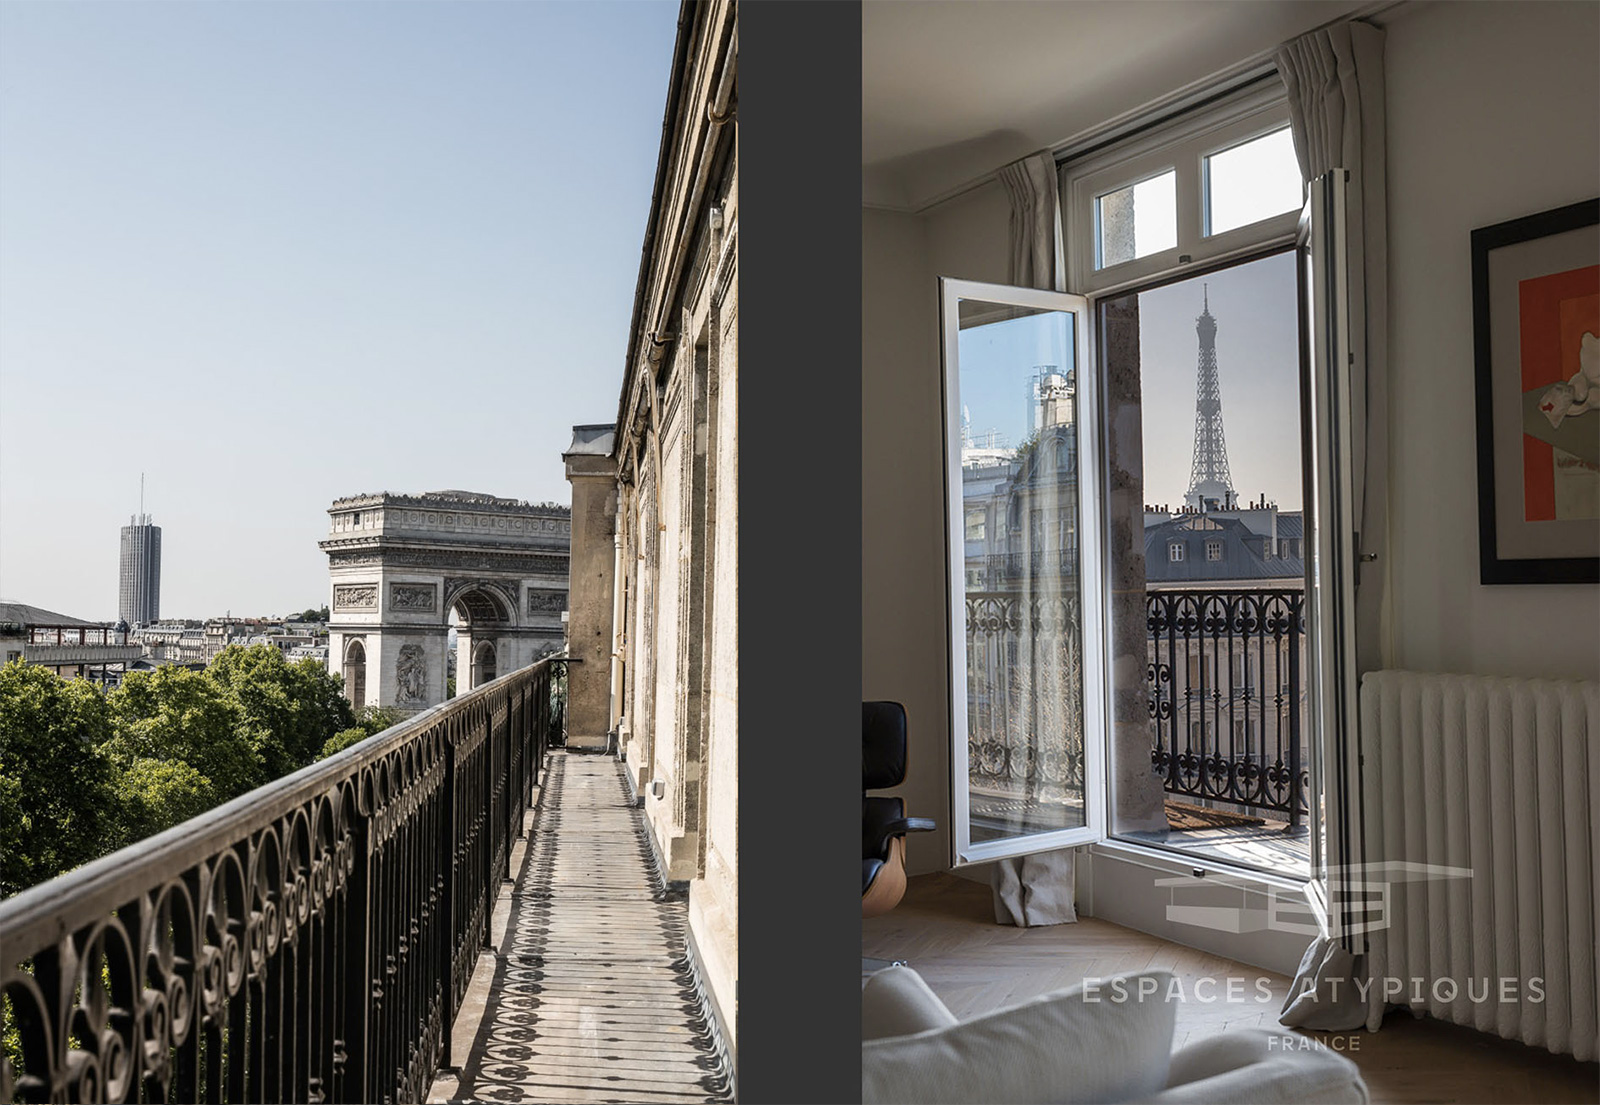 A minimalist duplex by the Champs Élysées lists for €8.5m